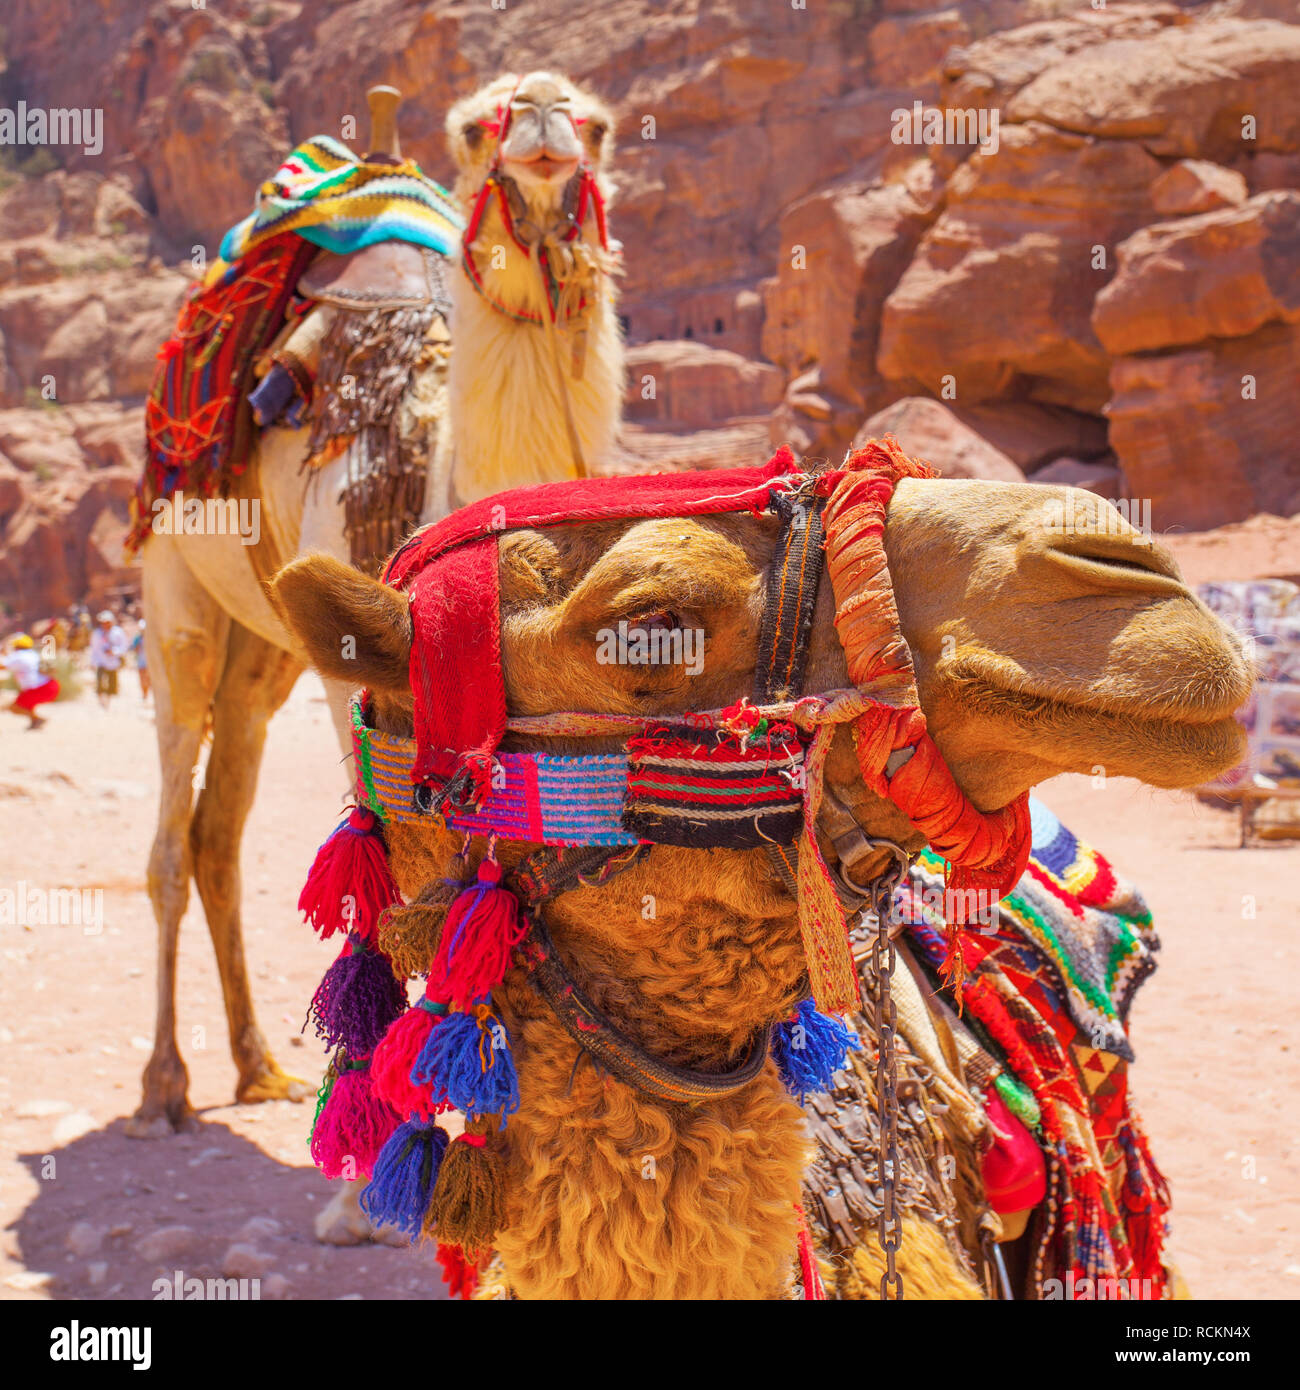 Bedouin's camels in Petra, Jotdan Stock Photo